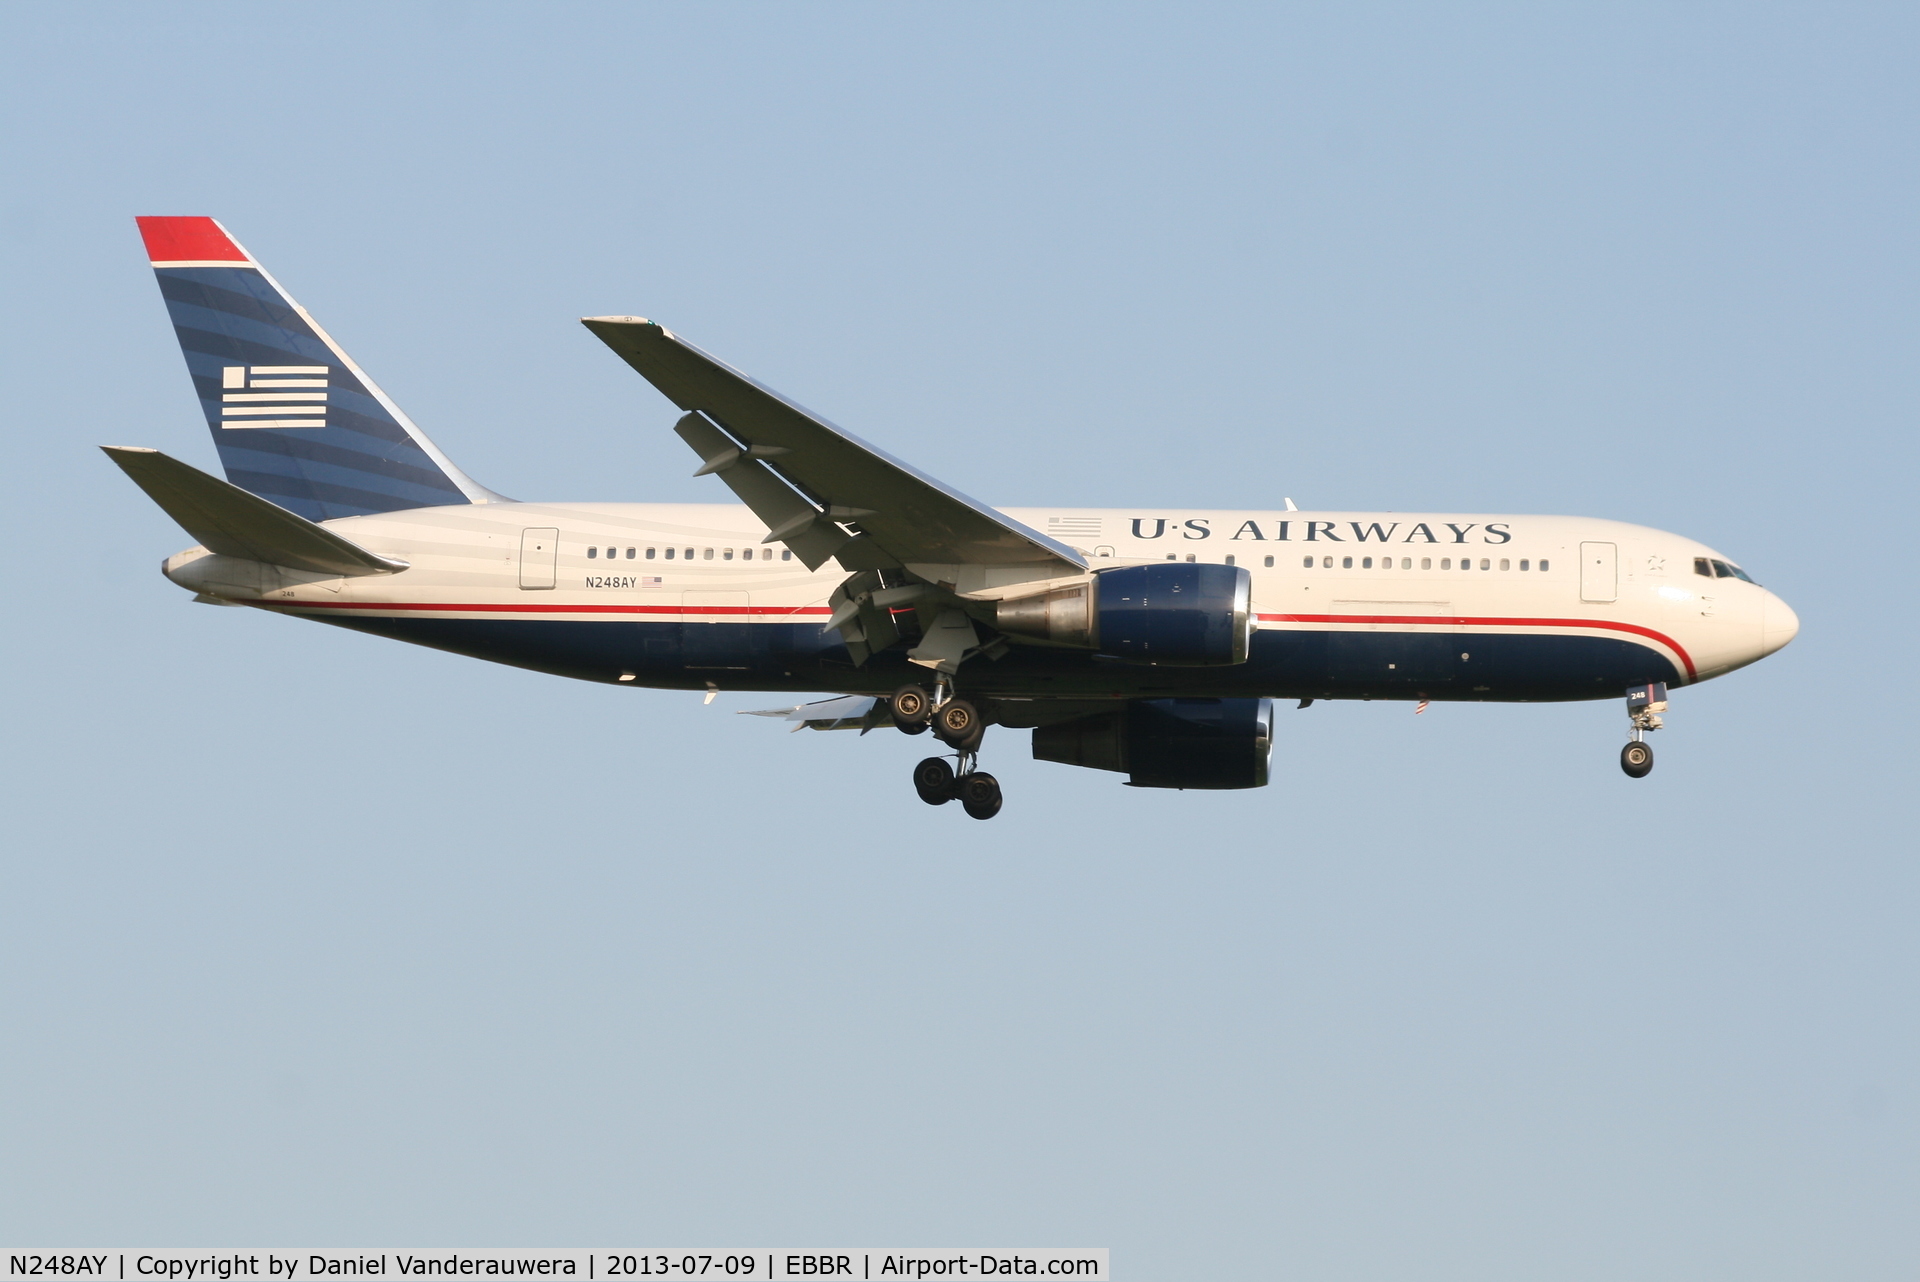 N248AY, 1988 Boeing 767-201 C/N 23900, Arrival of flight US750 to RWY 02